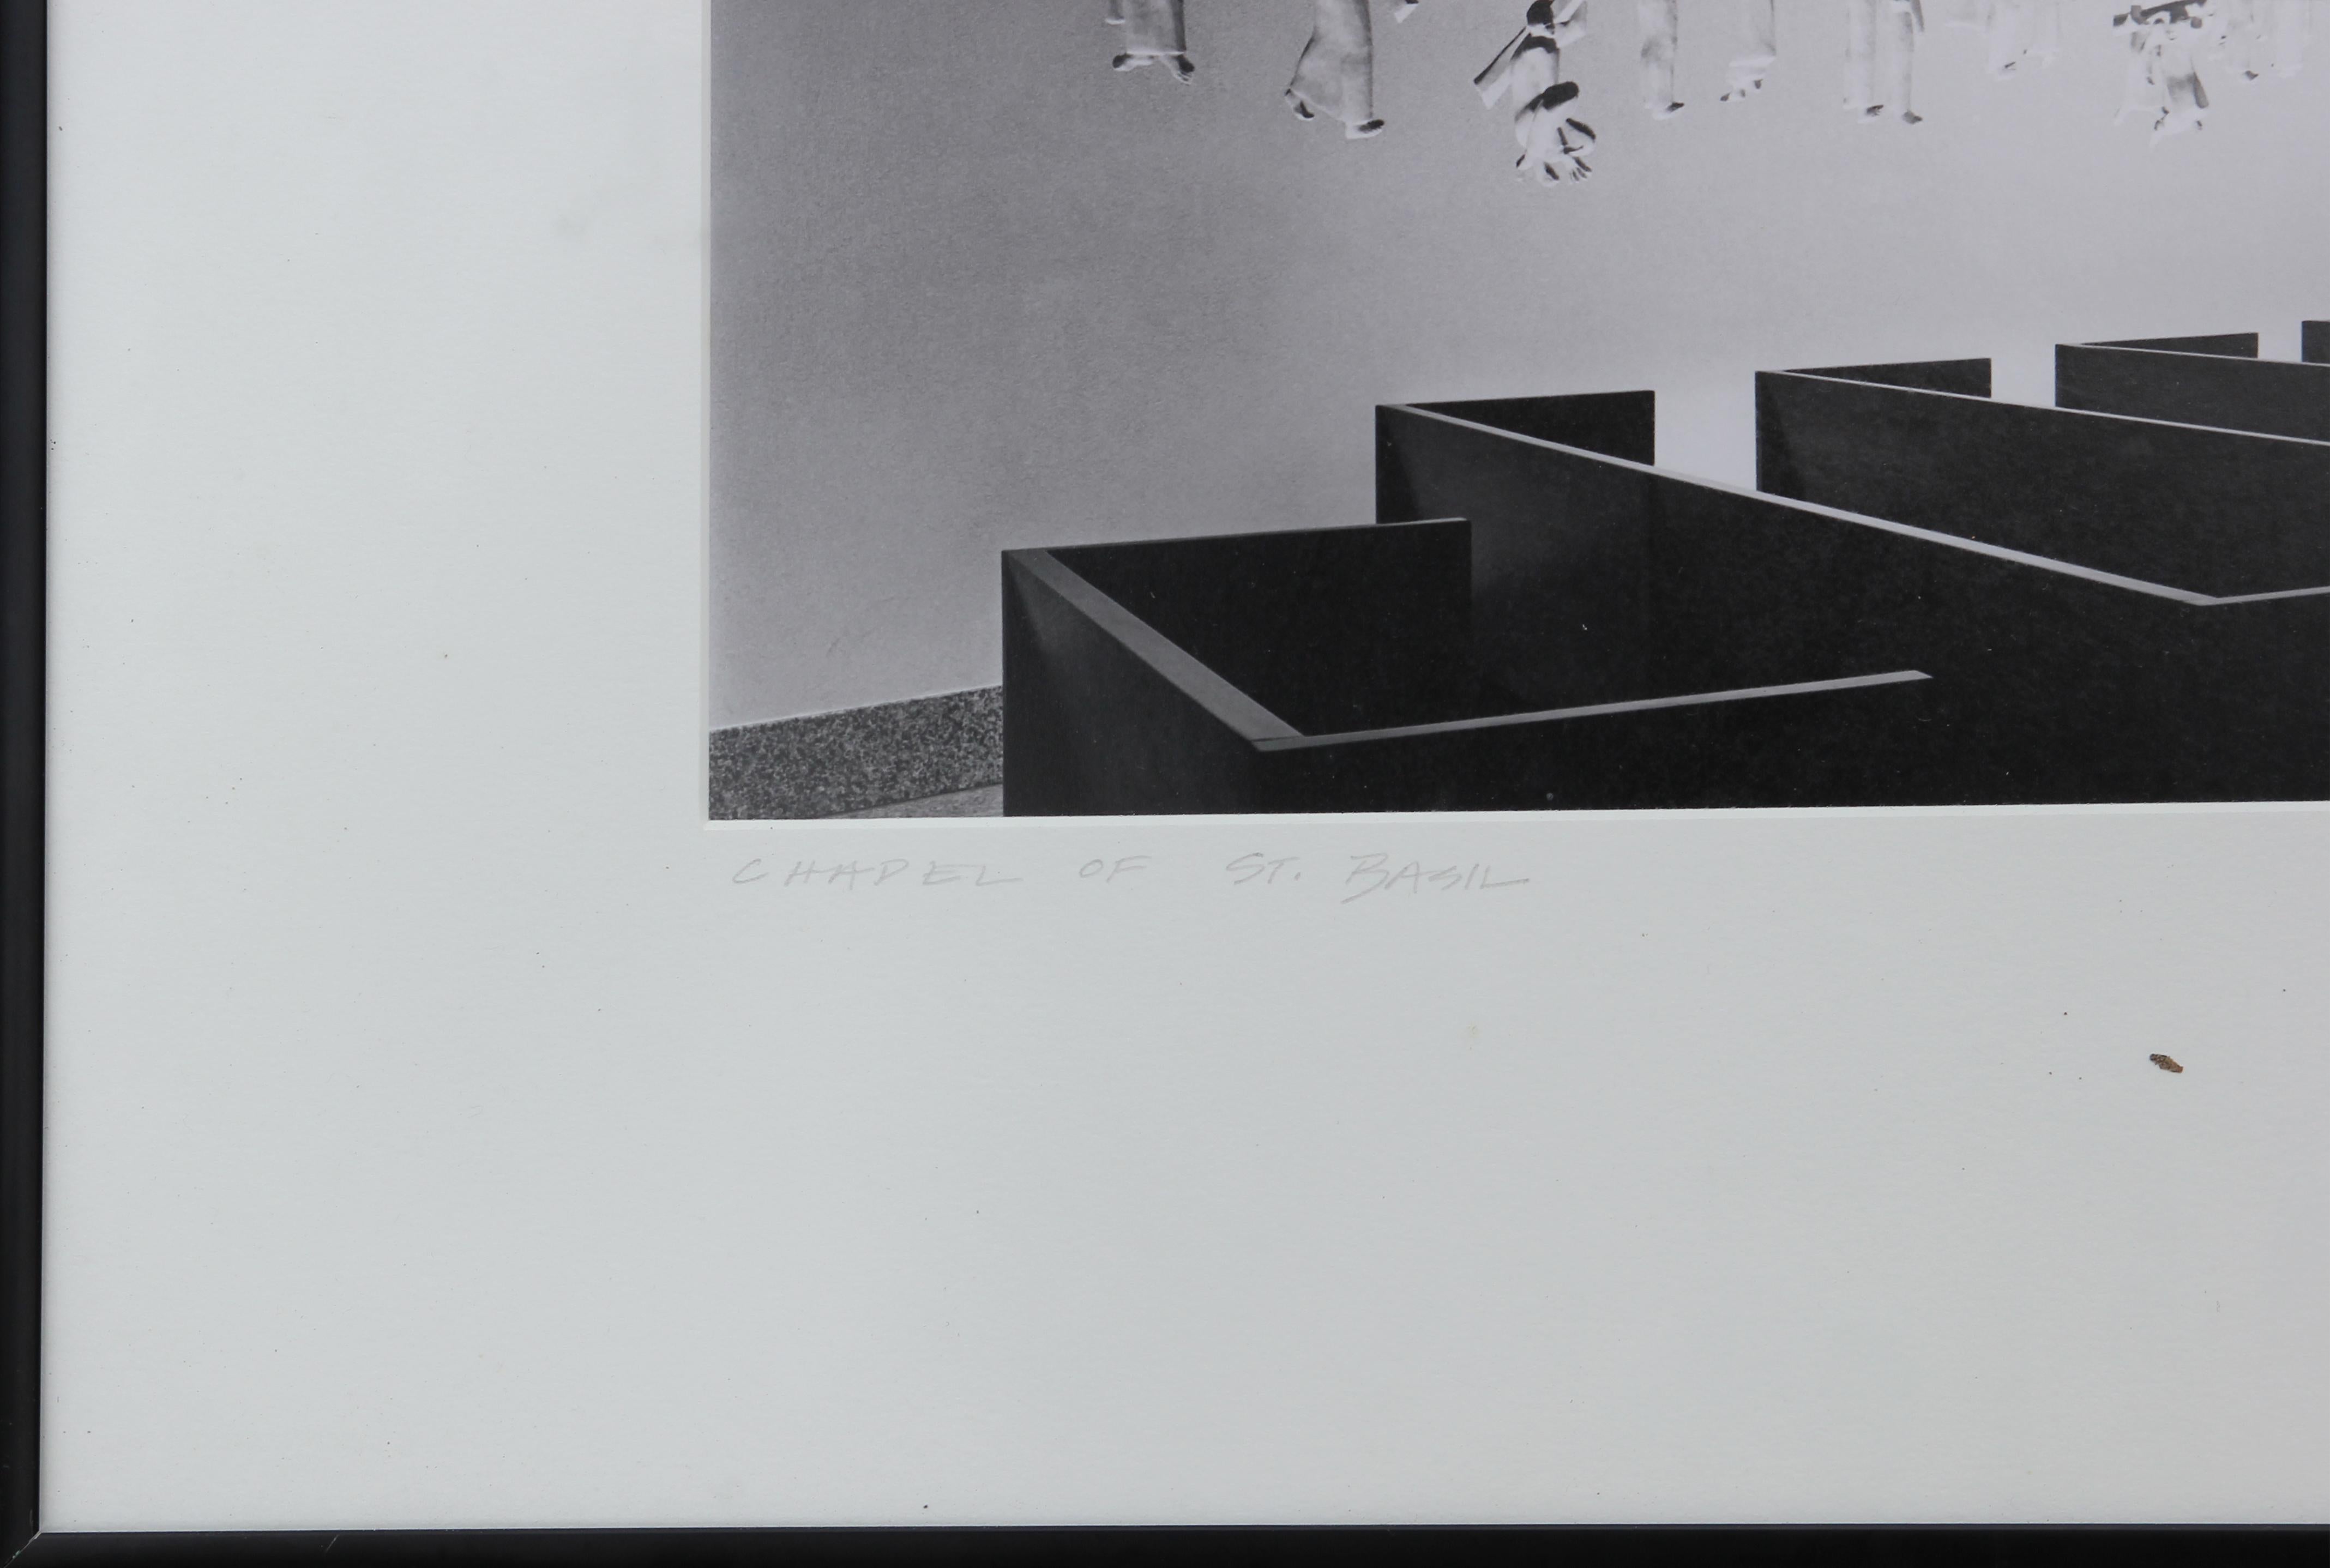 Schwarz-Weiß-Foto des Fotografen Nash Baker aus Houston, Texas, vom Kreuzfenster der Basilius-Kapelle und der Skulptur der Kreuzigungsprozession. Betitelt, signiert und datiert vom Künstler auf der Matte. Mattiert und gerahmt in schwarzem